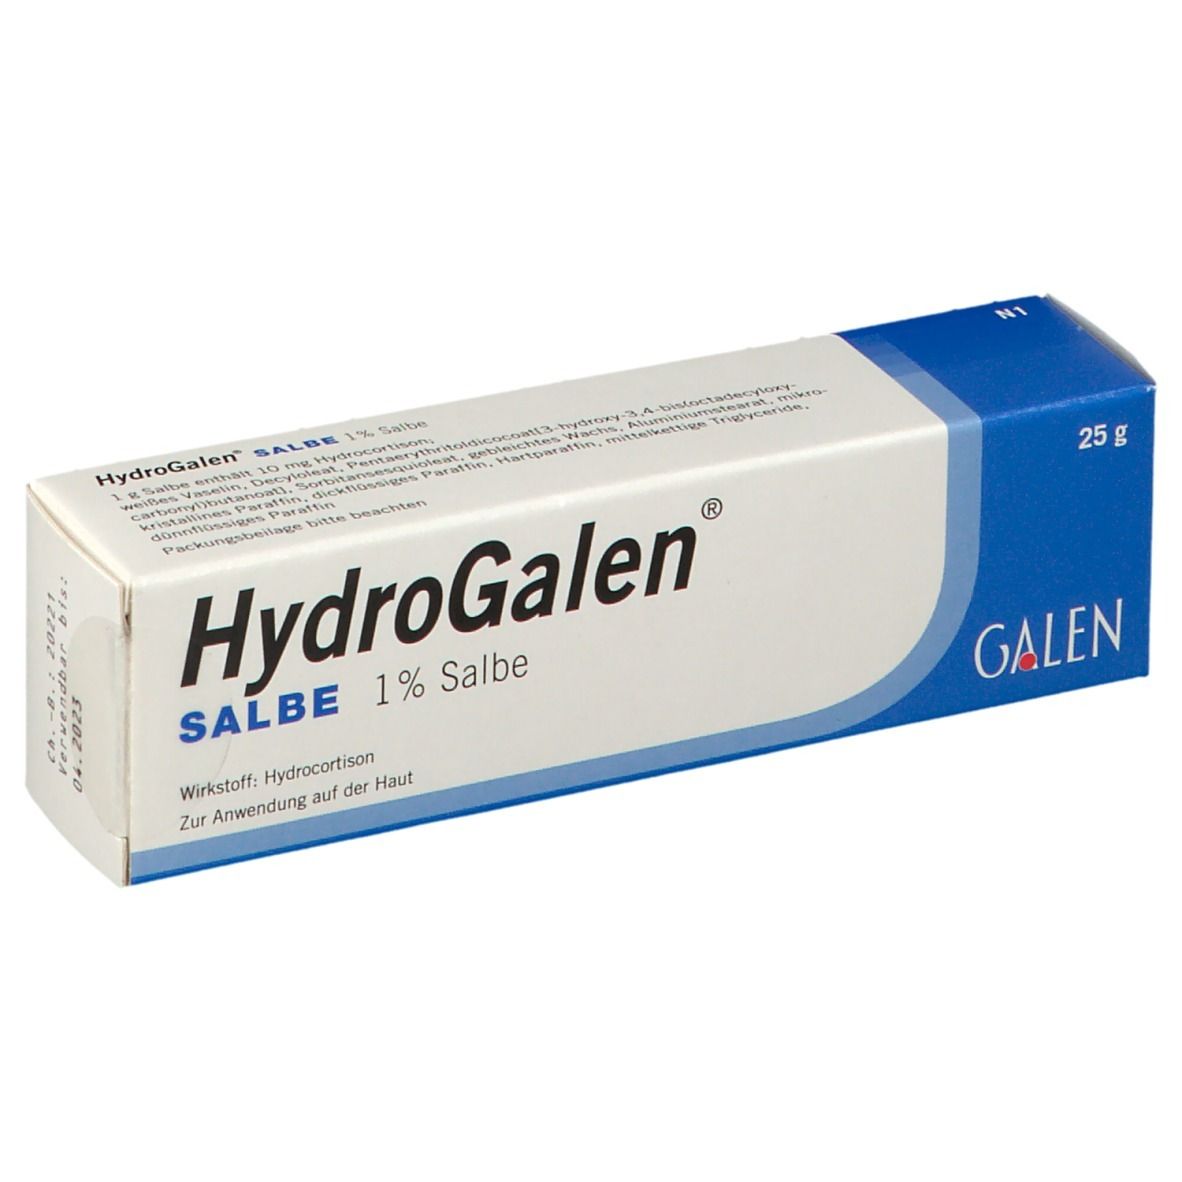 HydroGalen® Salbe